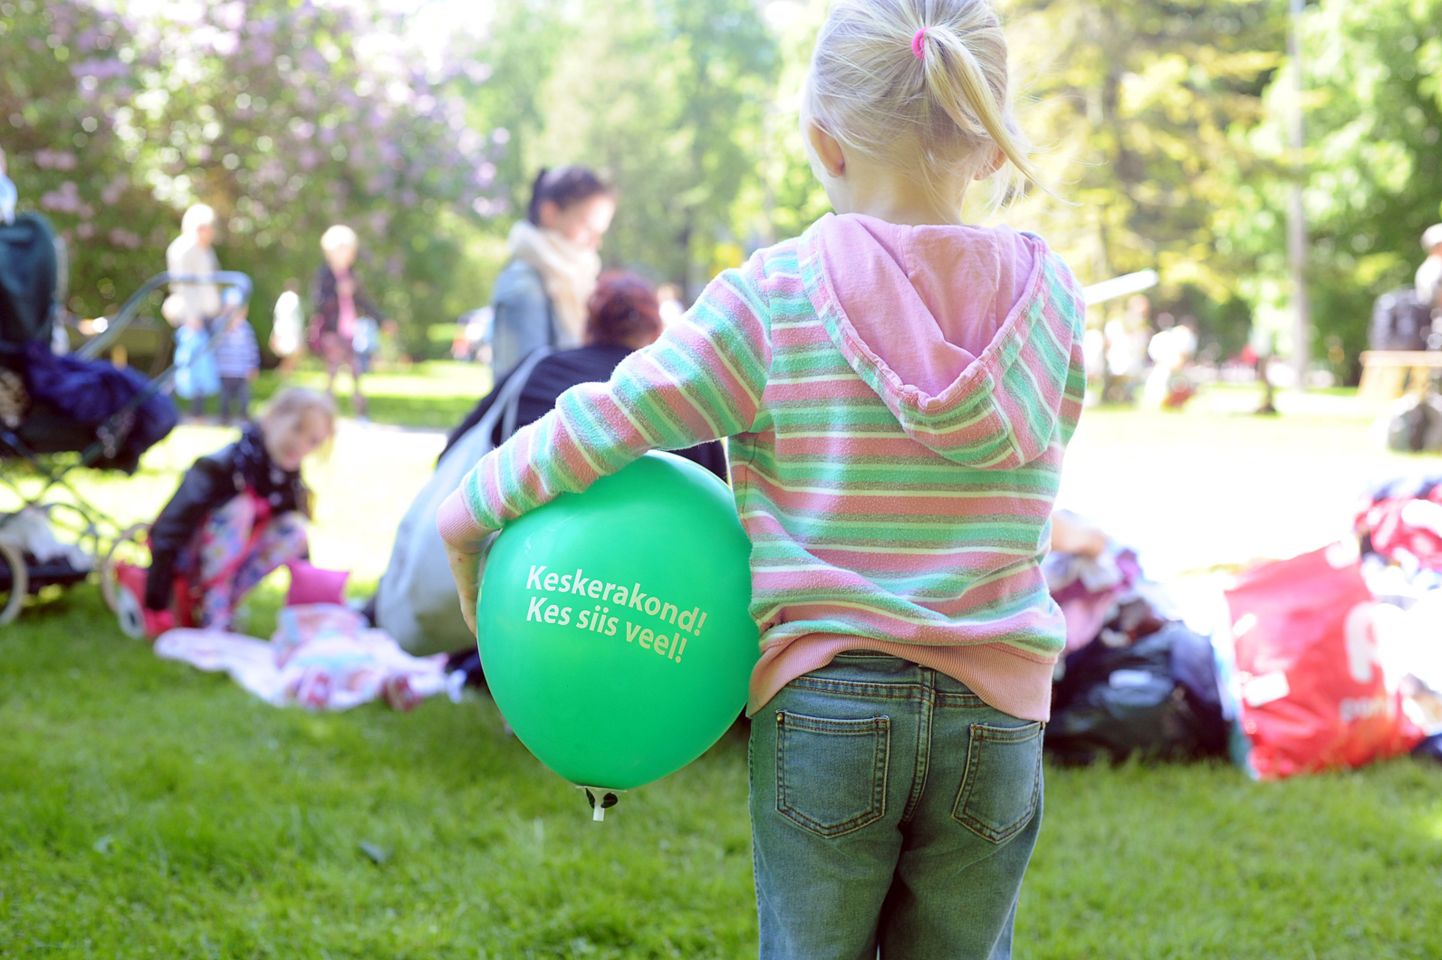 Lastele jagatud õhupallidel oli Keskerakonna logo ja loosung.